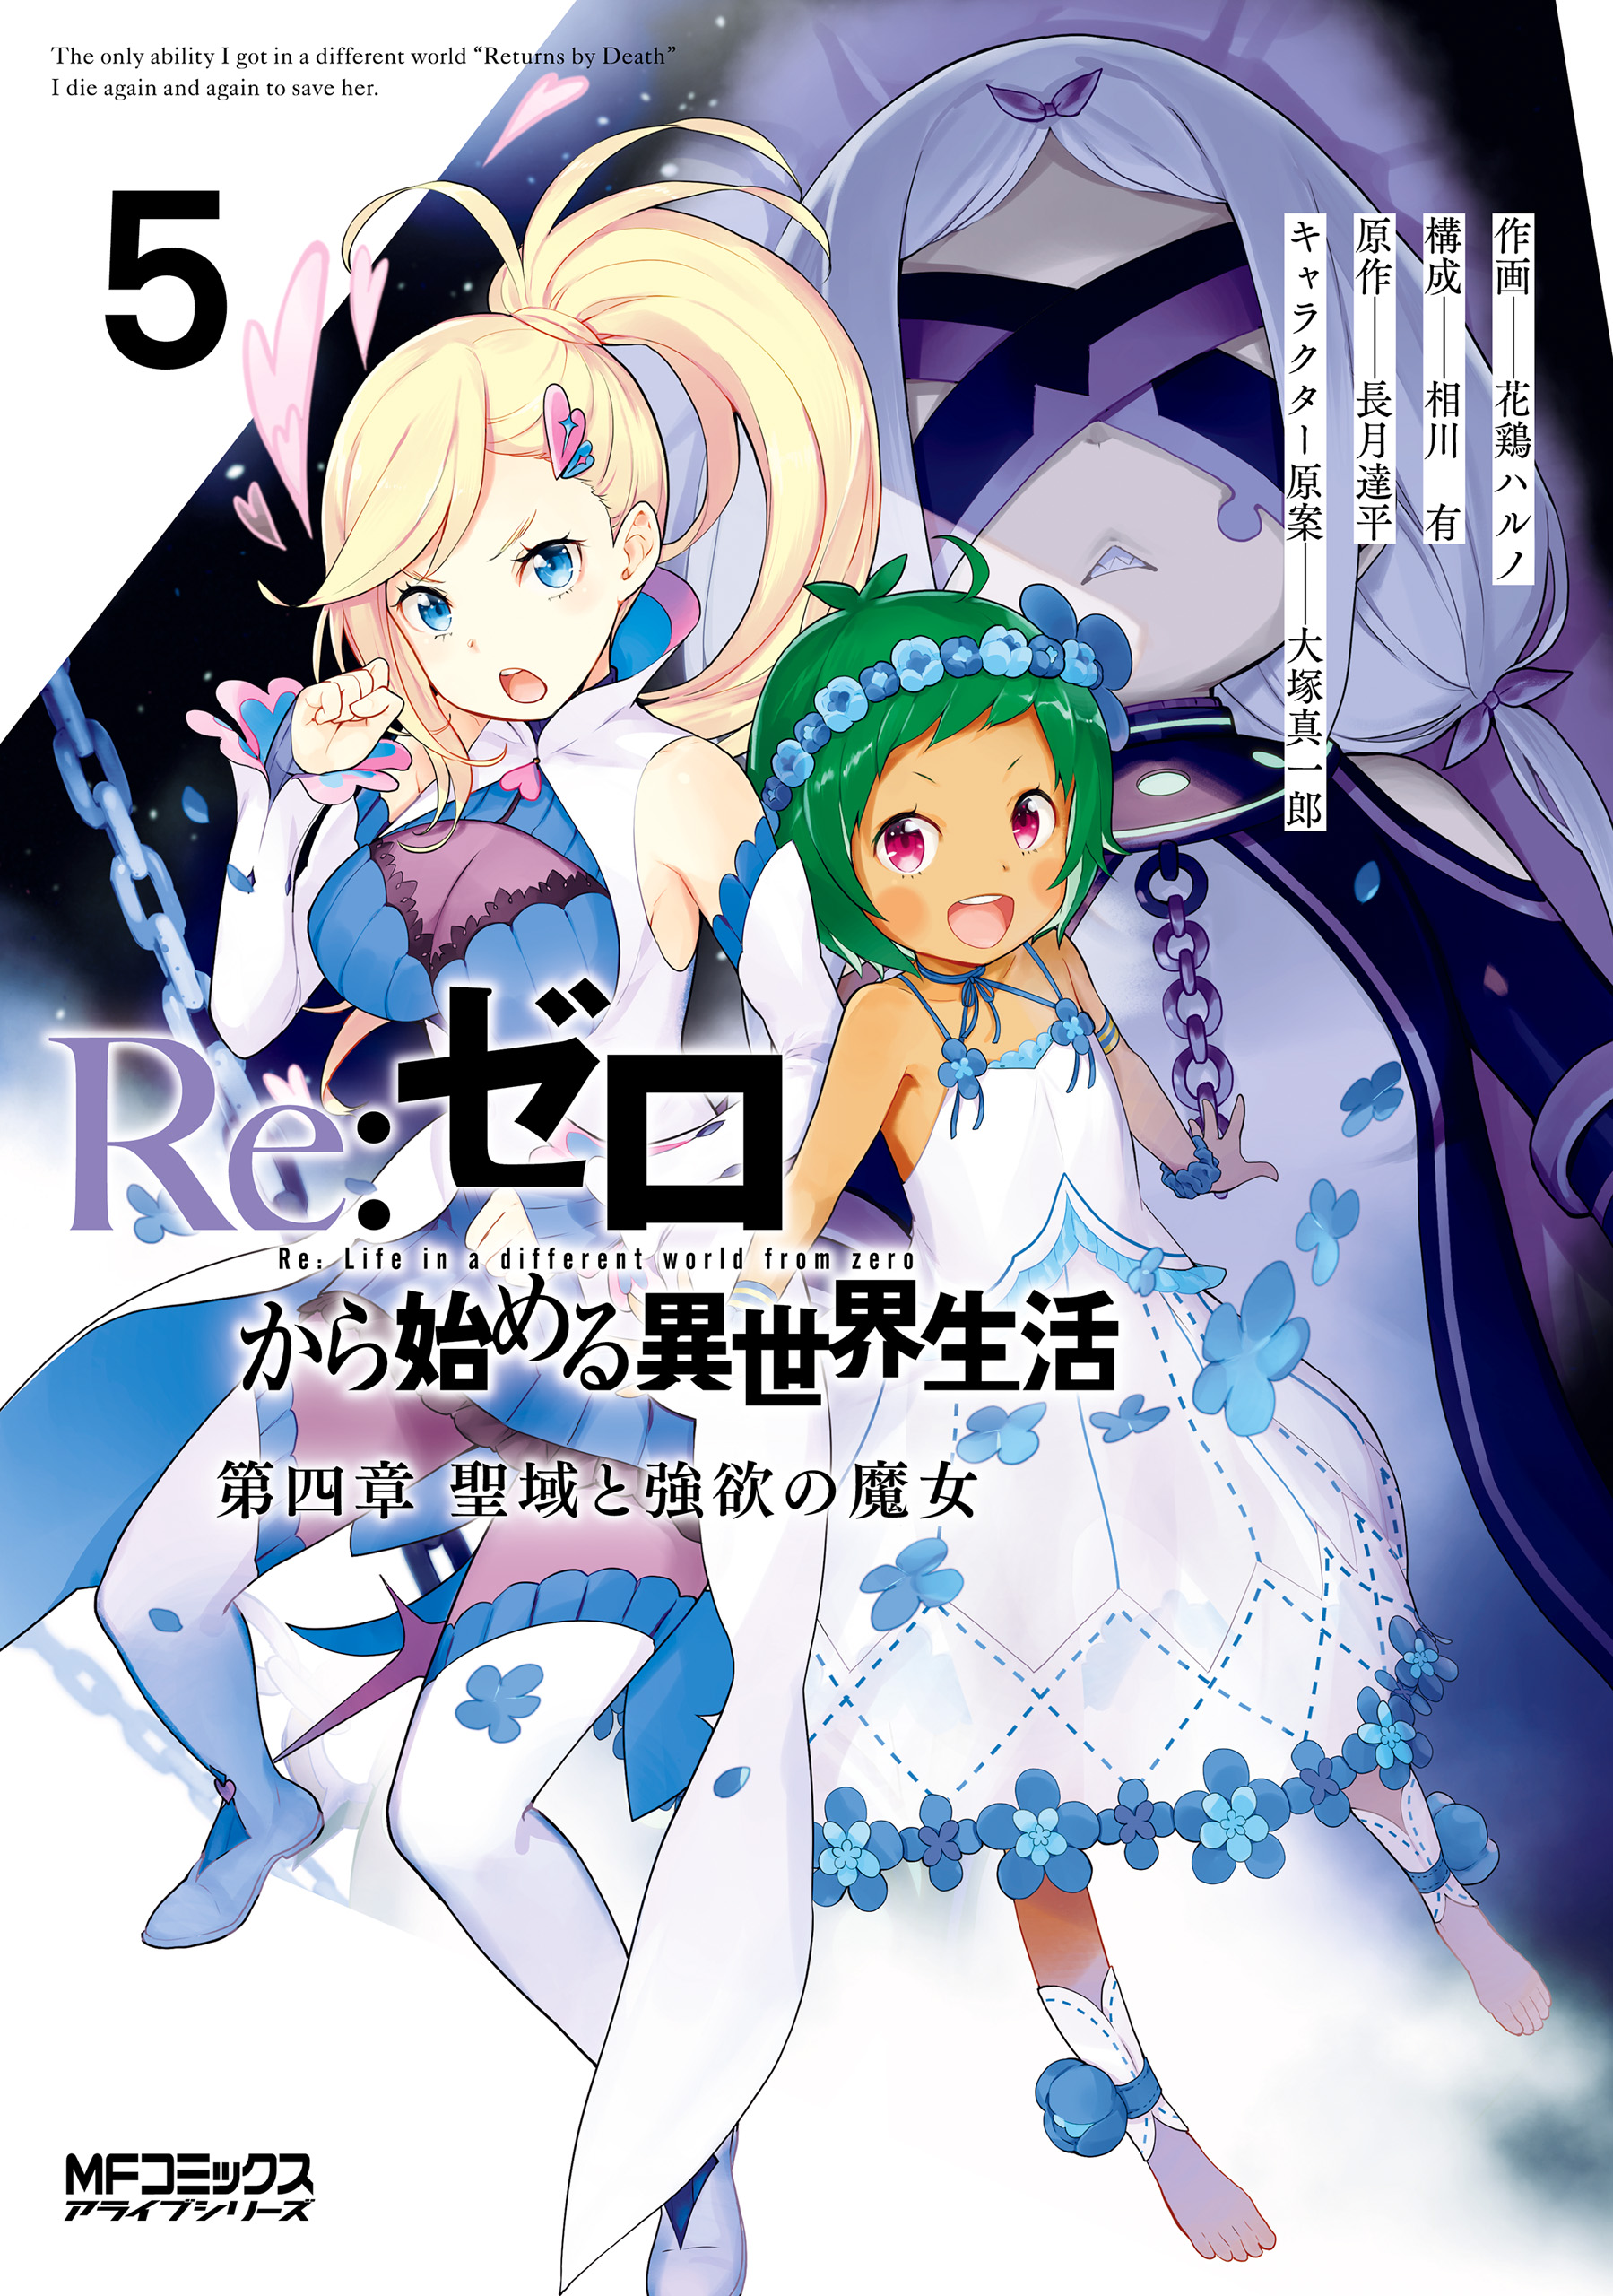 Daiyonshou Manga Volume 5 Re Zero Wiki Fandom